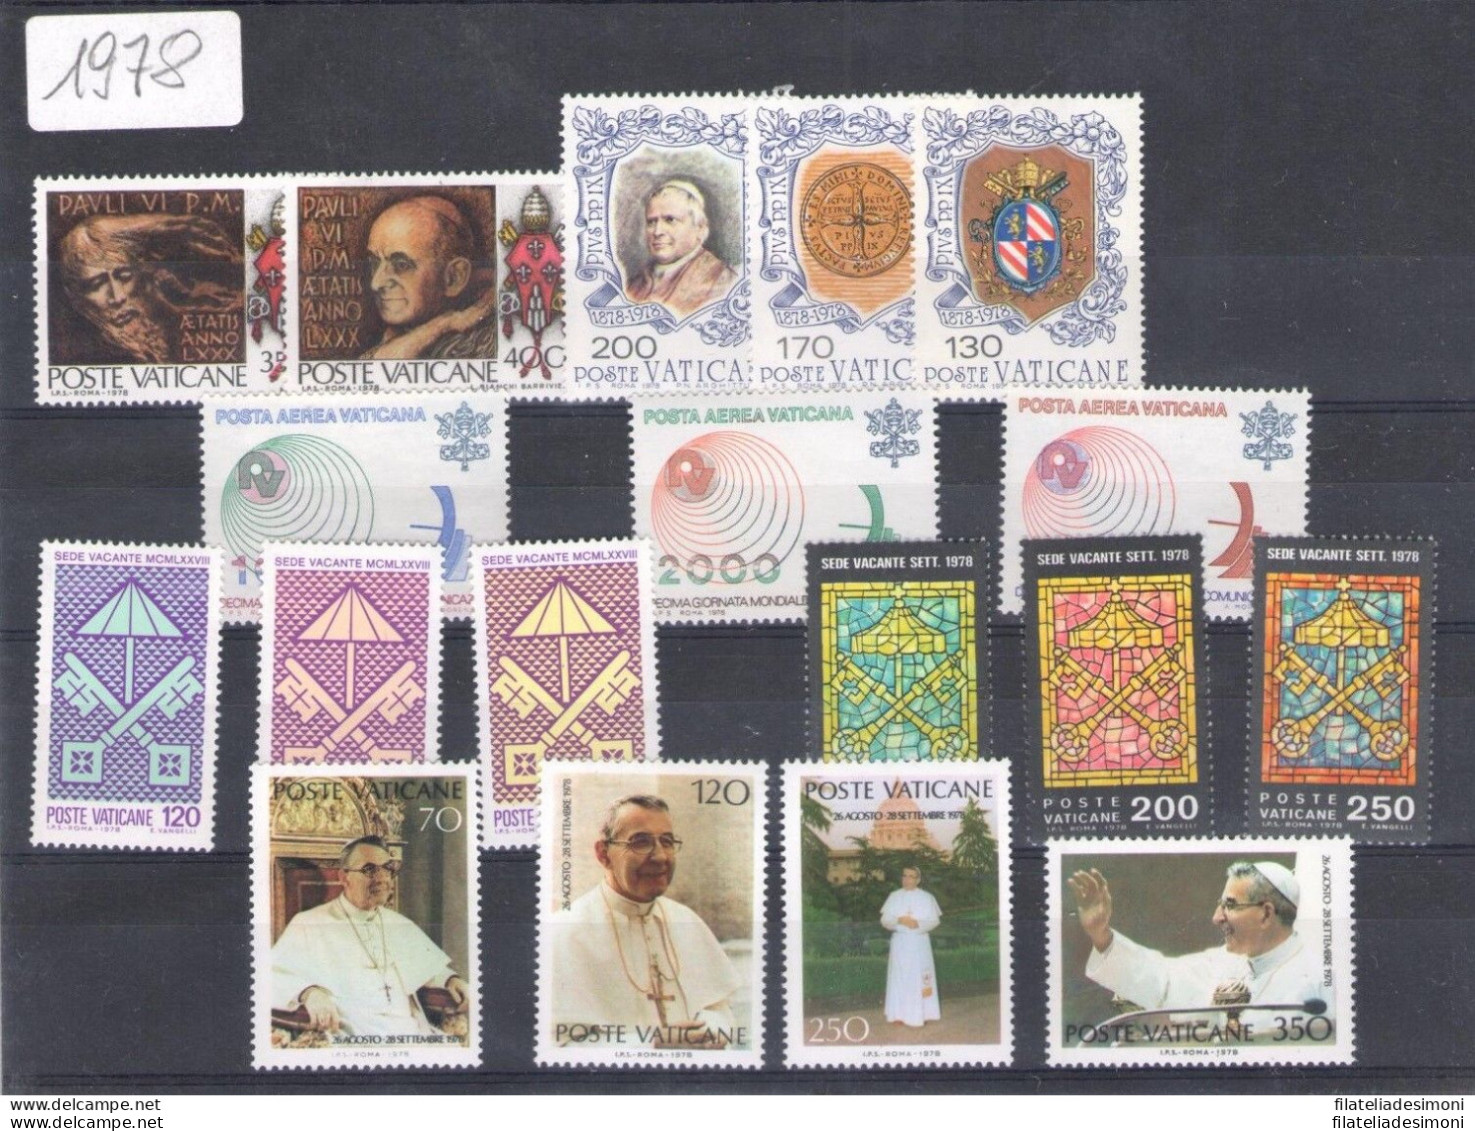 1978/2004 Vaticano, Francobolli Nuovi,  Offerta Giovanni Paolo II, Annate Comple - Annate Complete